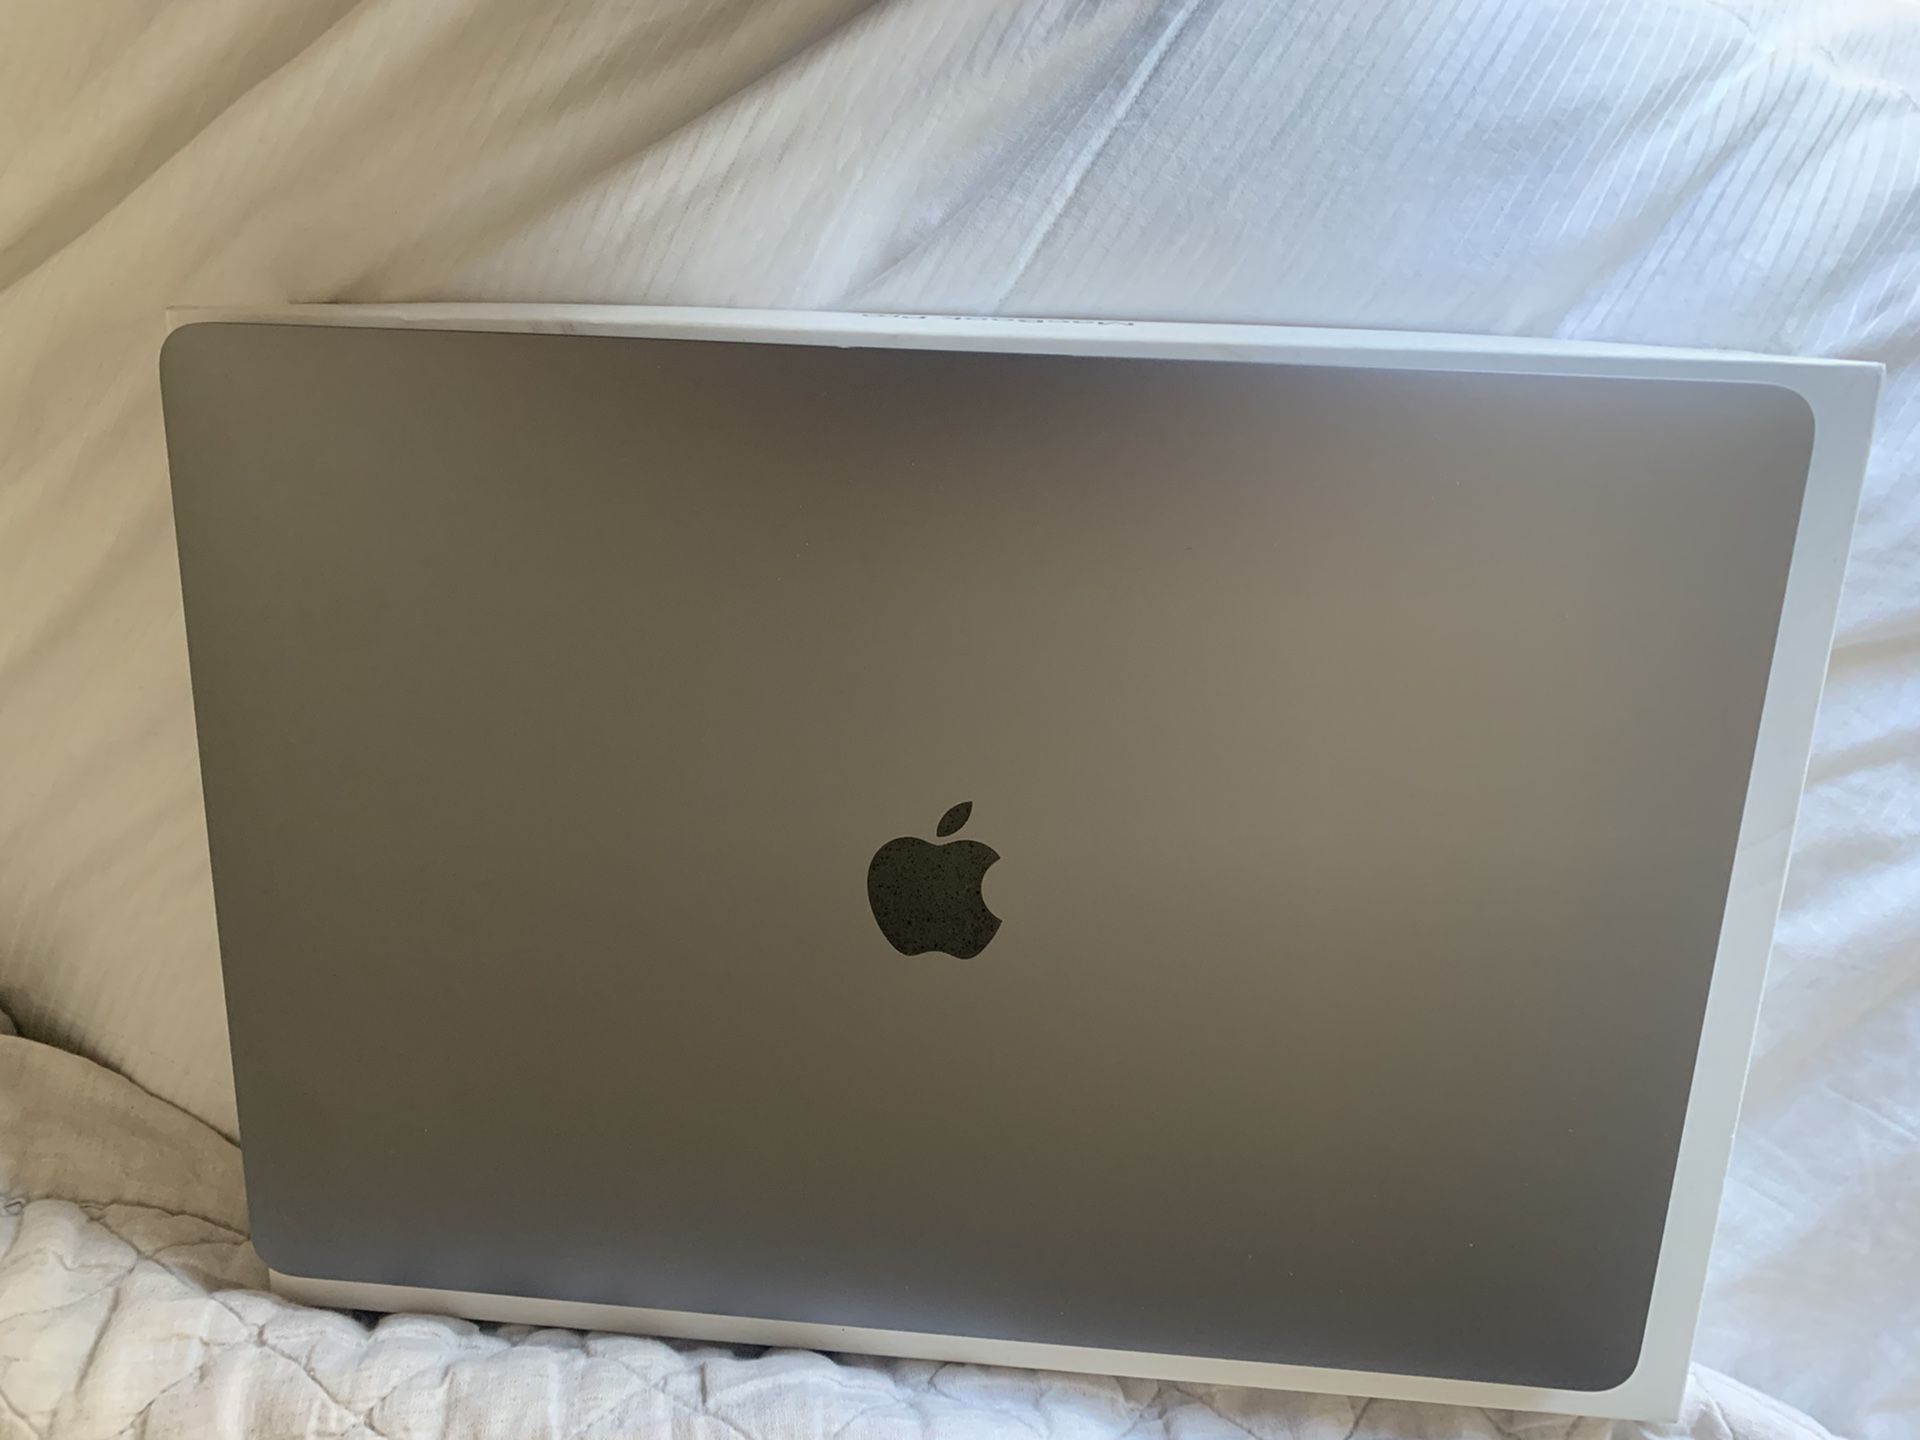 MacBook Pro 15 inch 